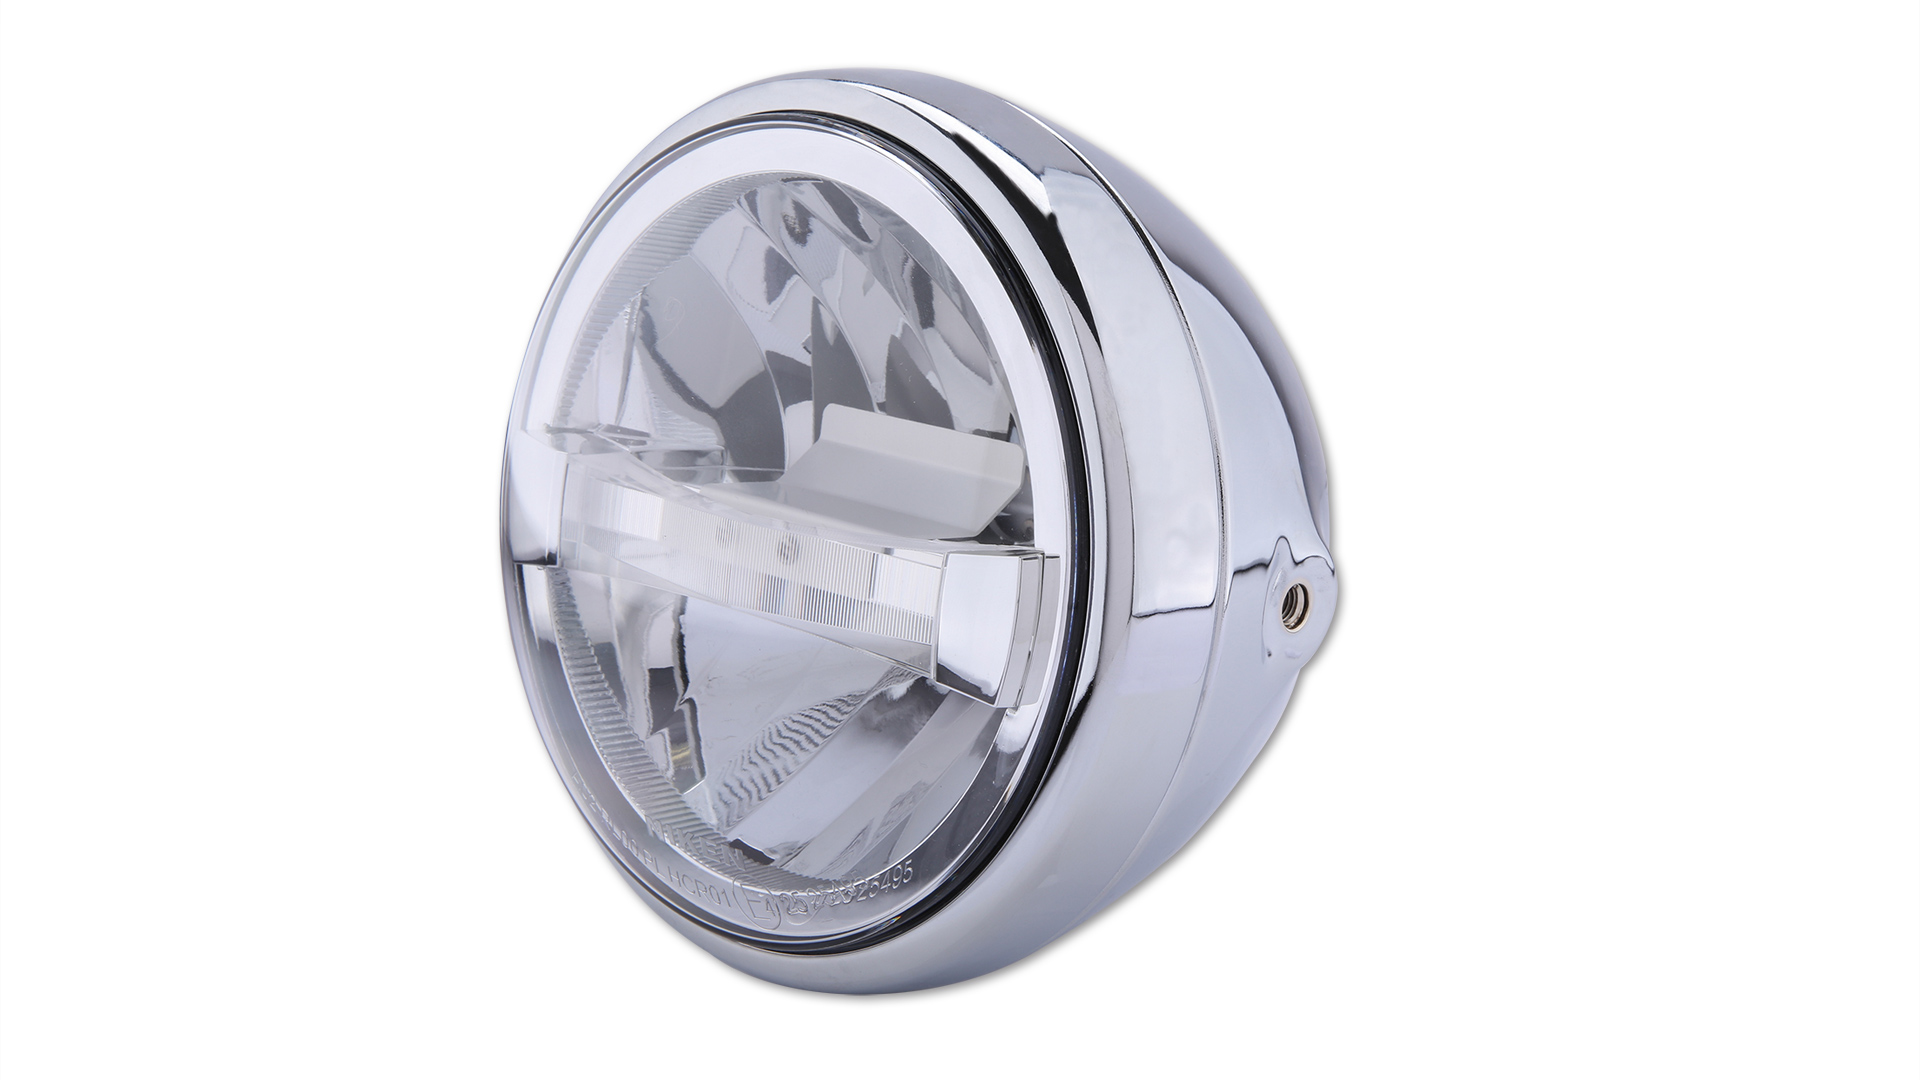 7 Zoll LED-Scheinwerfer RENO TYP 4 mit TFL, Metallgehäuse, klares Glas, rund, seitliche Befestigung, E-geprüft.